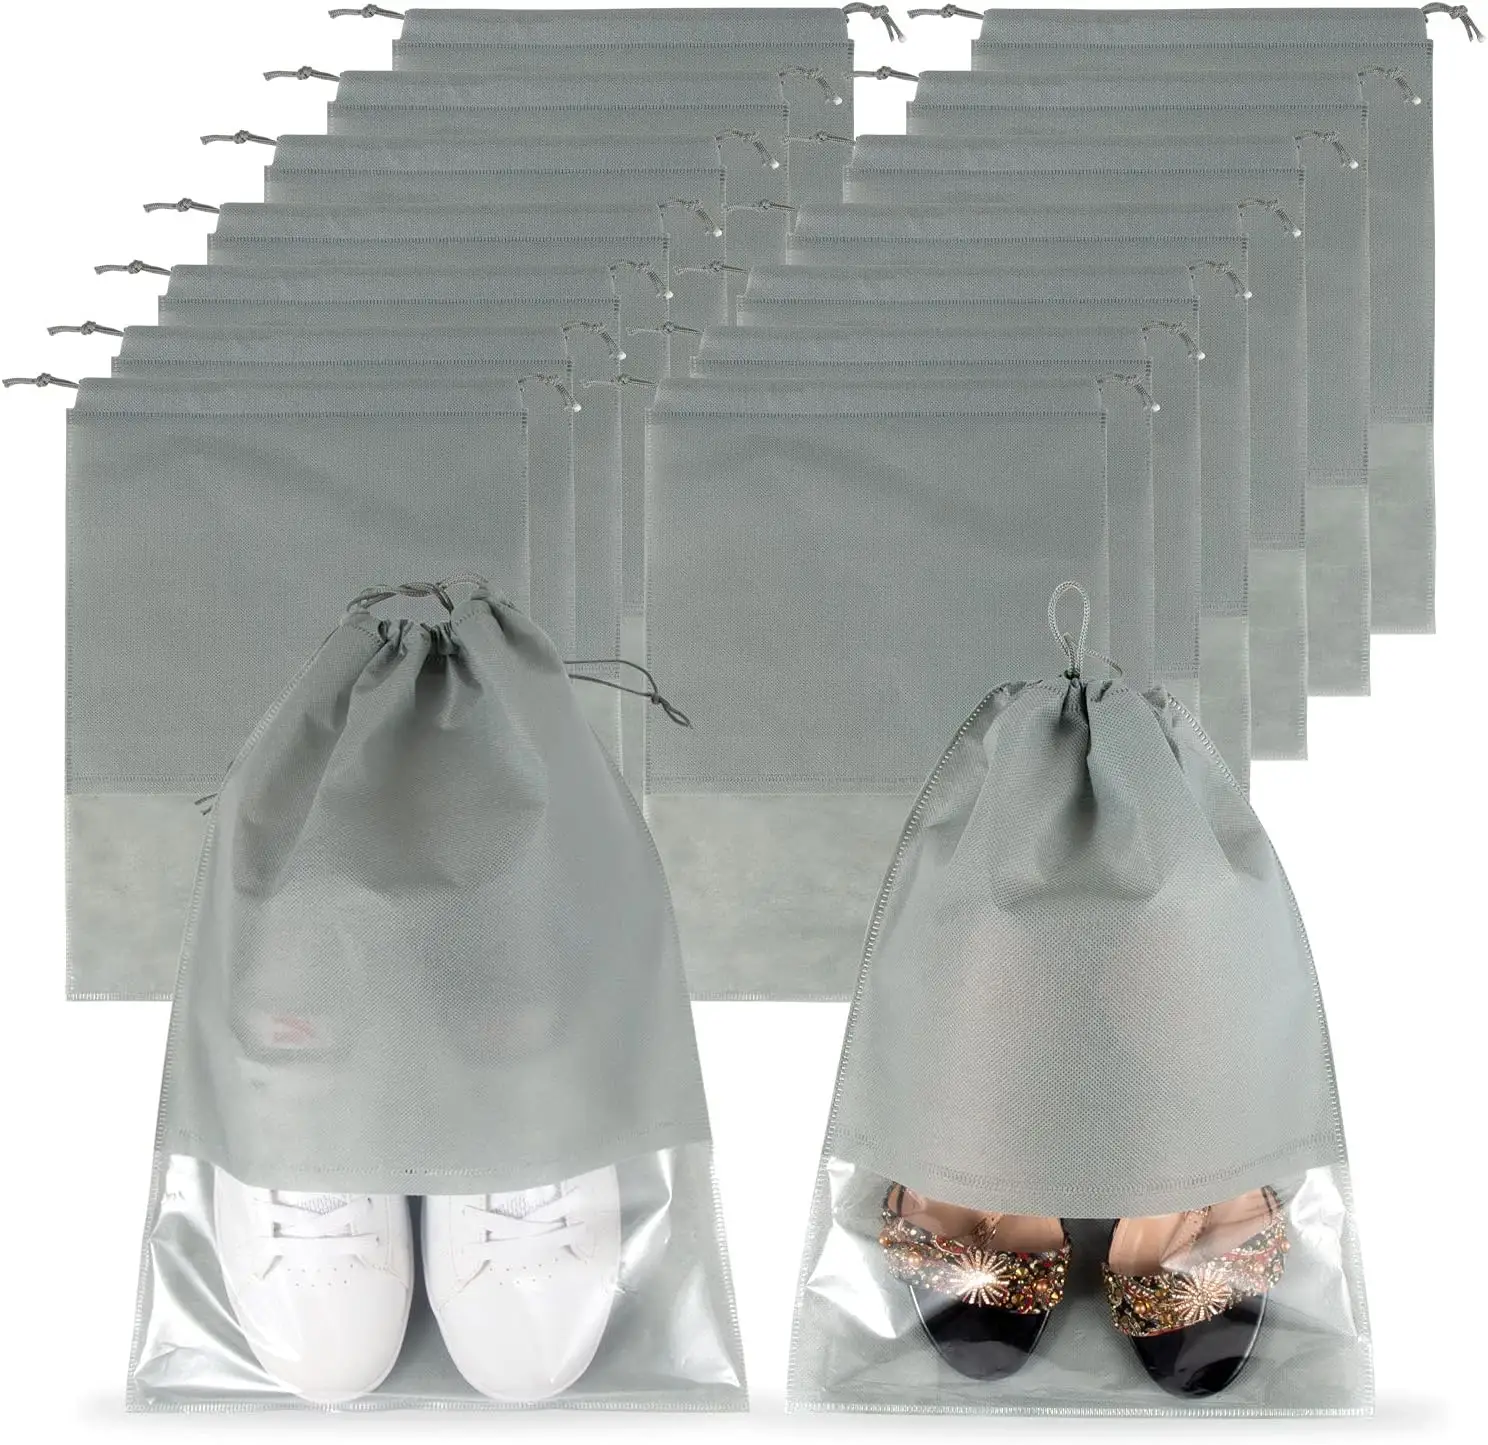 Yeniden kullanılabilir hafif seyahat ayakkabısı dokunmamış ipli çanta şeffaf pencere ile toz geçirmez ayakkabı saklama çantası